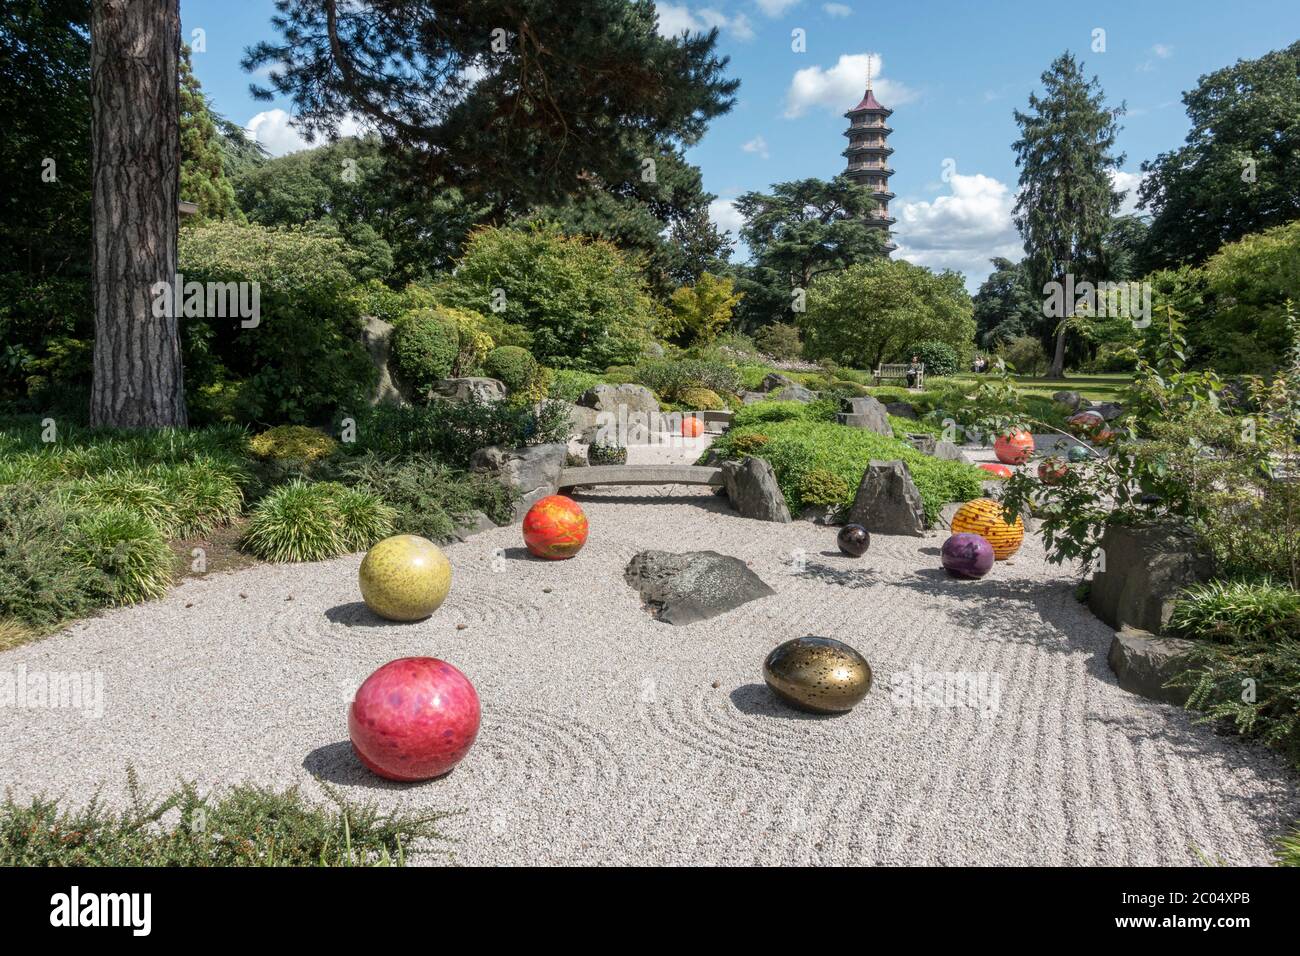 'Niijima flotte' dans le jardin japonais, une sculpture en verre de Dale Chihuly, Royal Botanic Gardens, Kew, Richmond upon Thames, Angleterre, Royaume-Uni. Banque D'Images